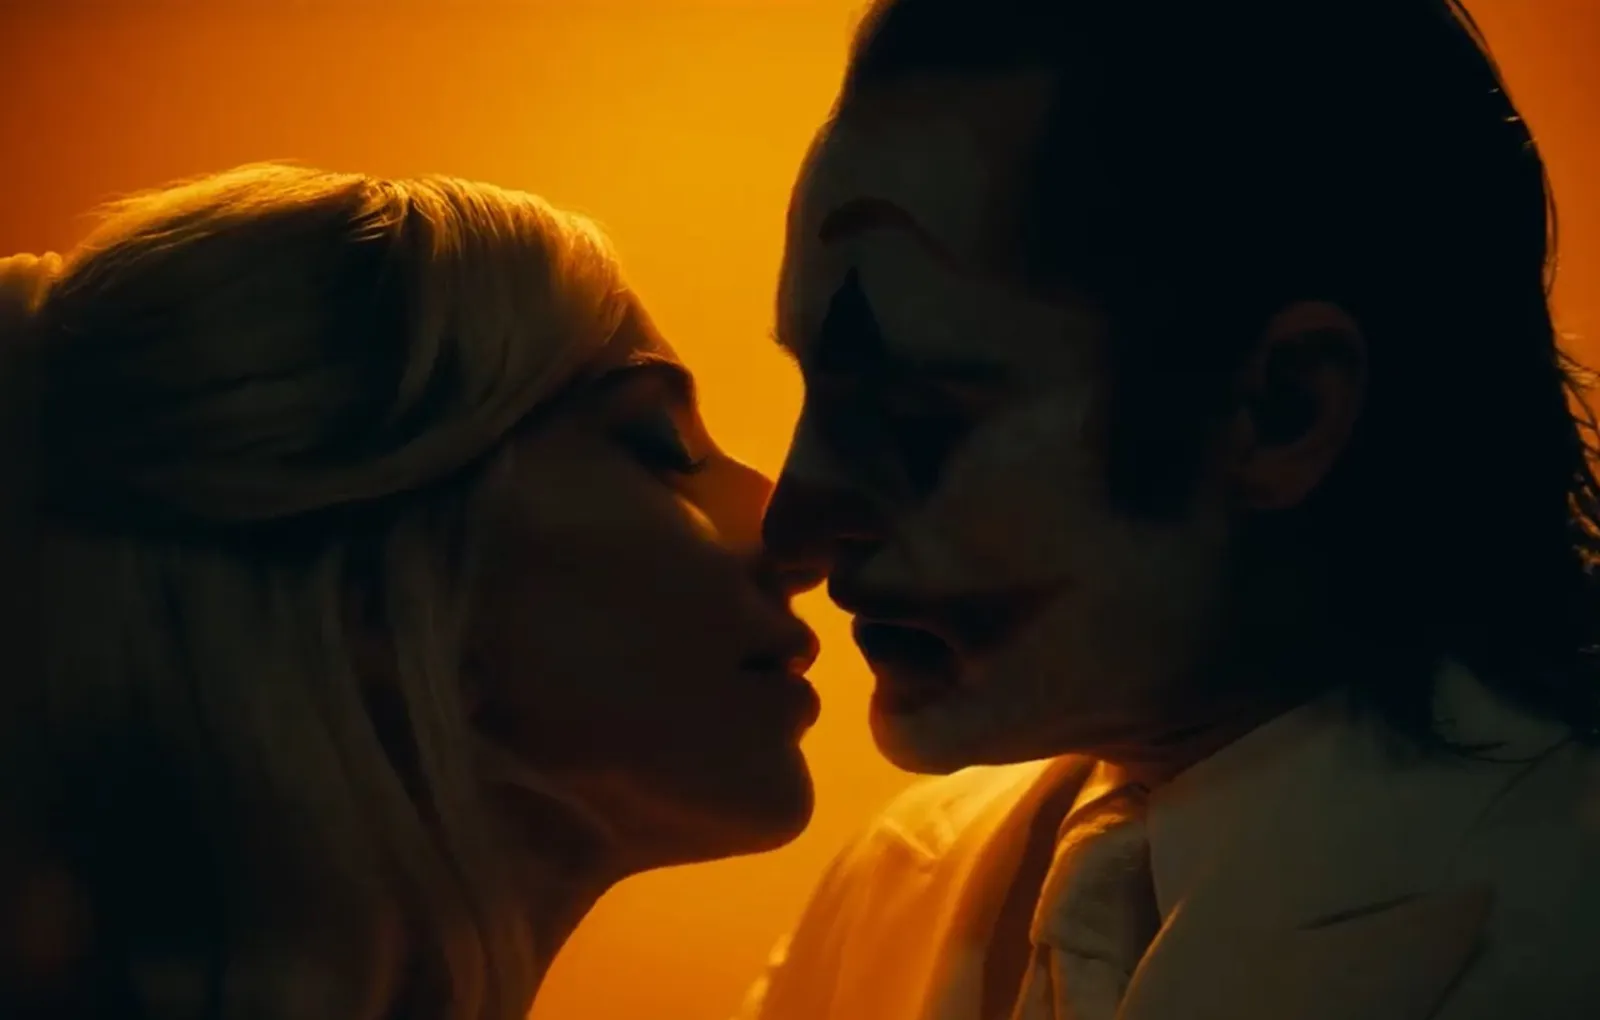 Хоакин Феникс и Леди Гага в фильме «Джокер: Безумие на двоих».